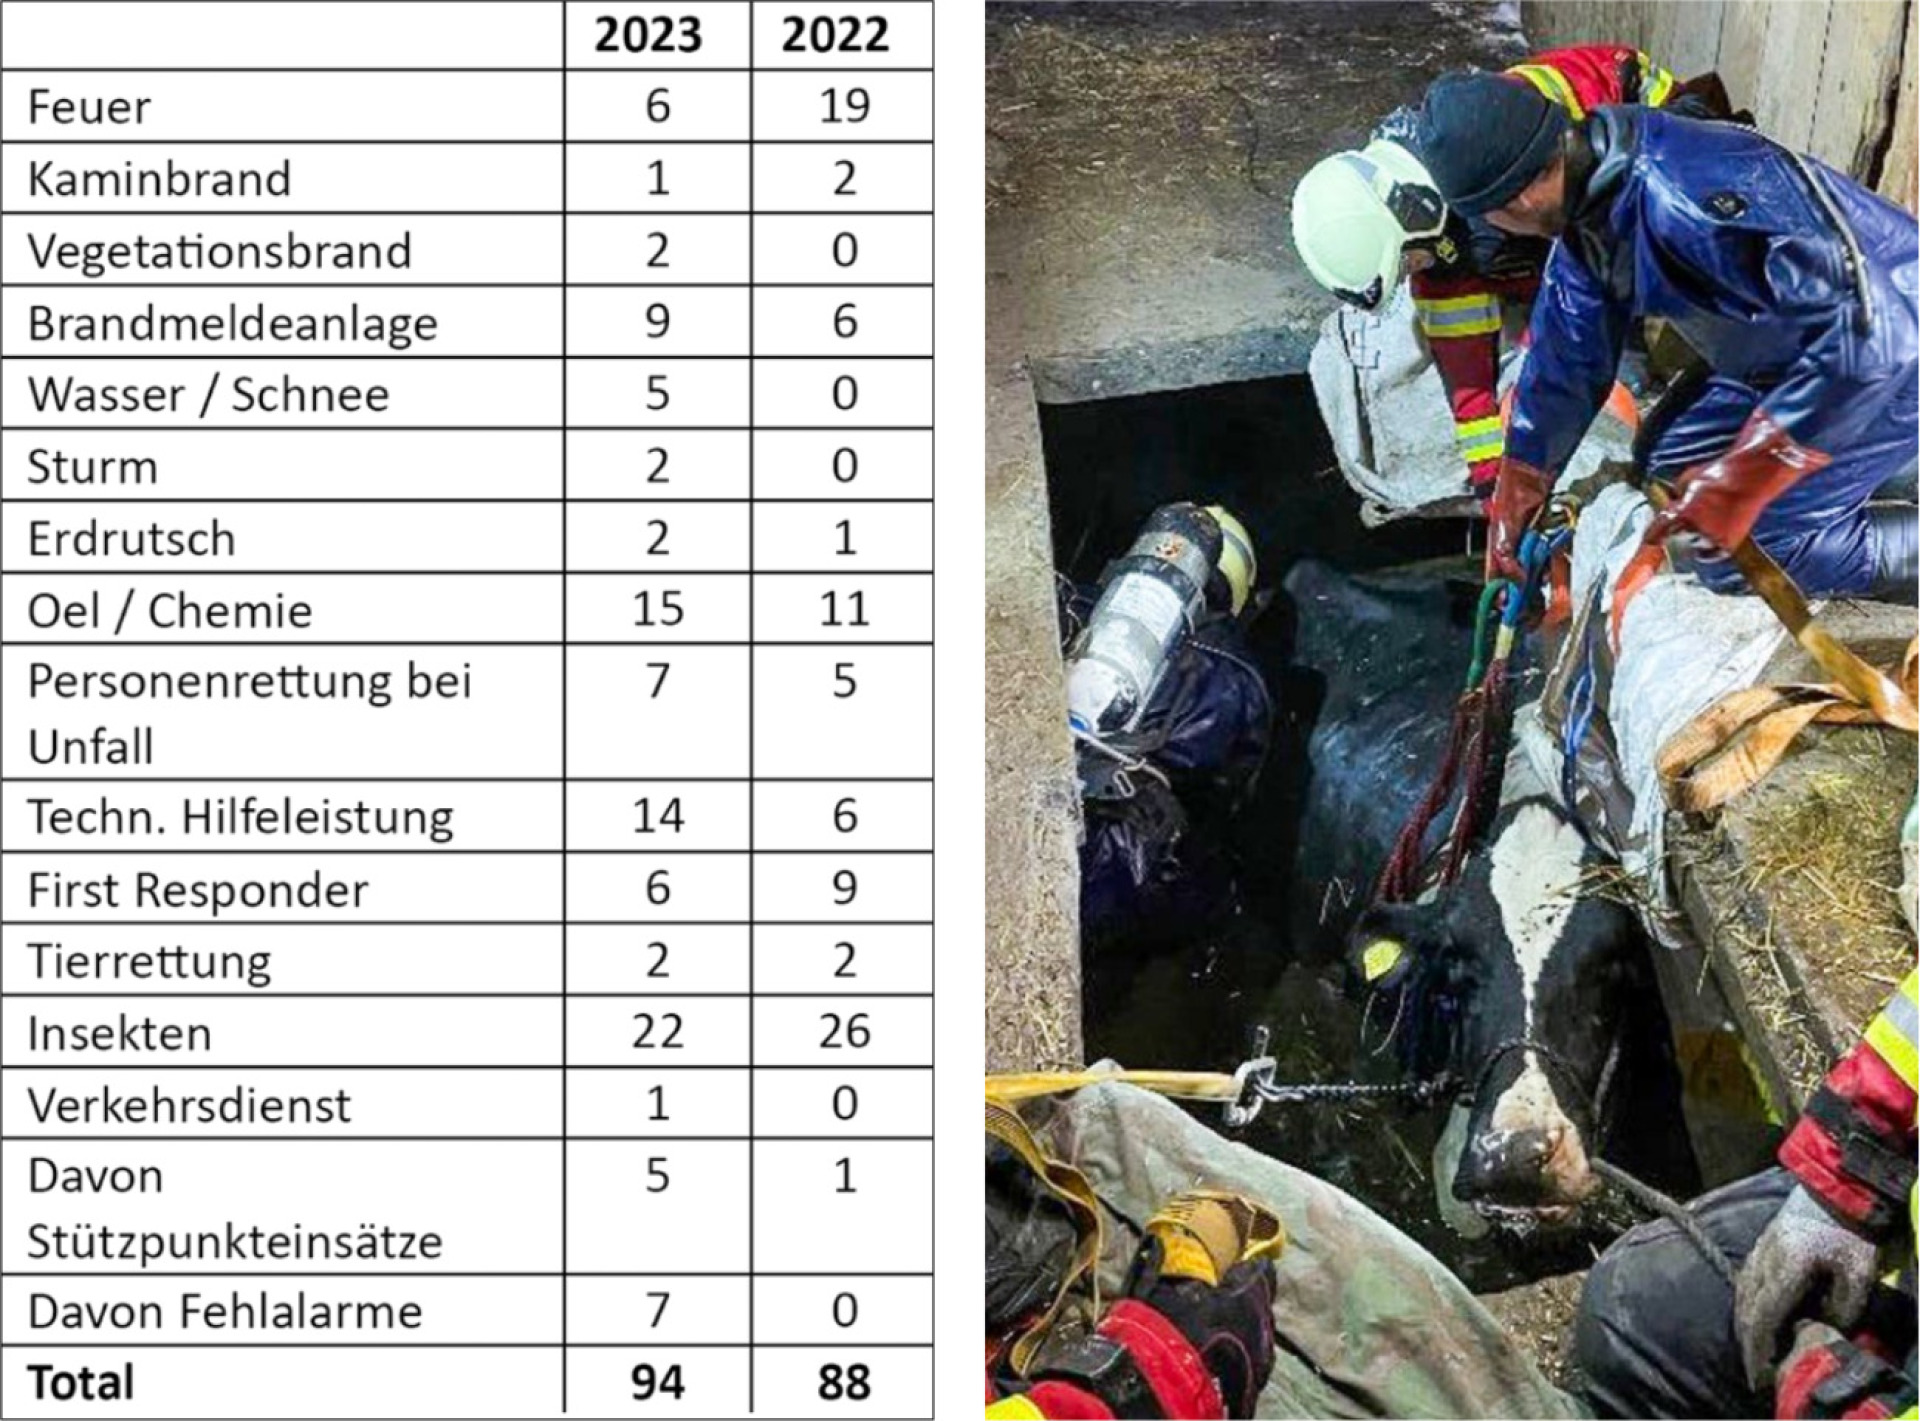 Zu den Einsätzen der Feuerwehr Frutigen (Tabelle) zählte auch die Befreiung einer Kuh aus einer Jauchegrube am 17. Januar 2023. BILDER: ZVG